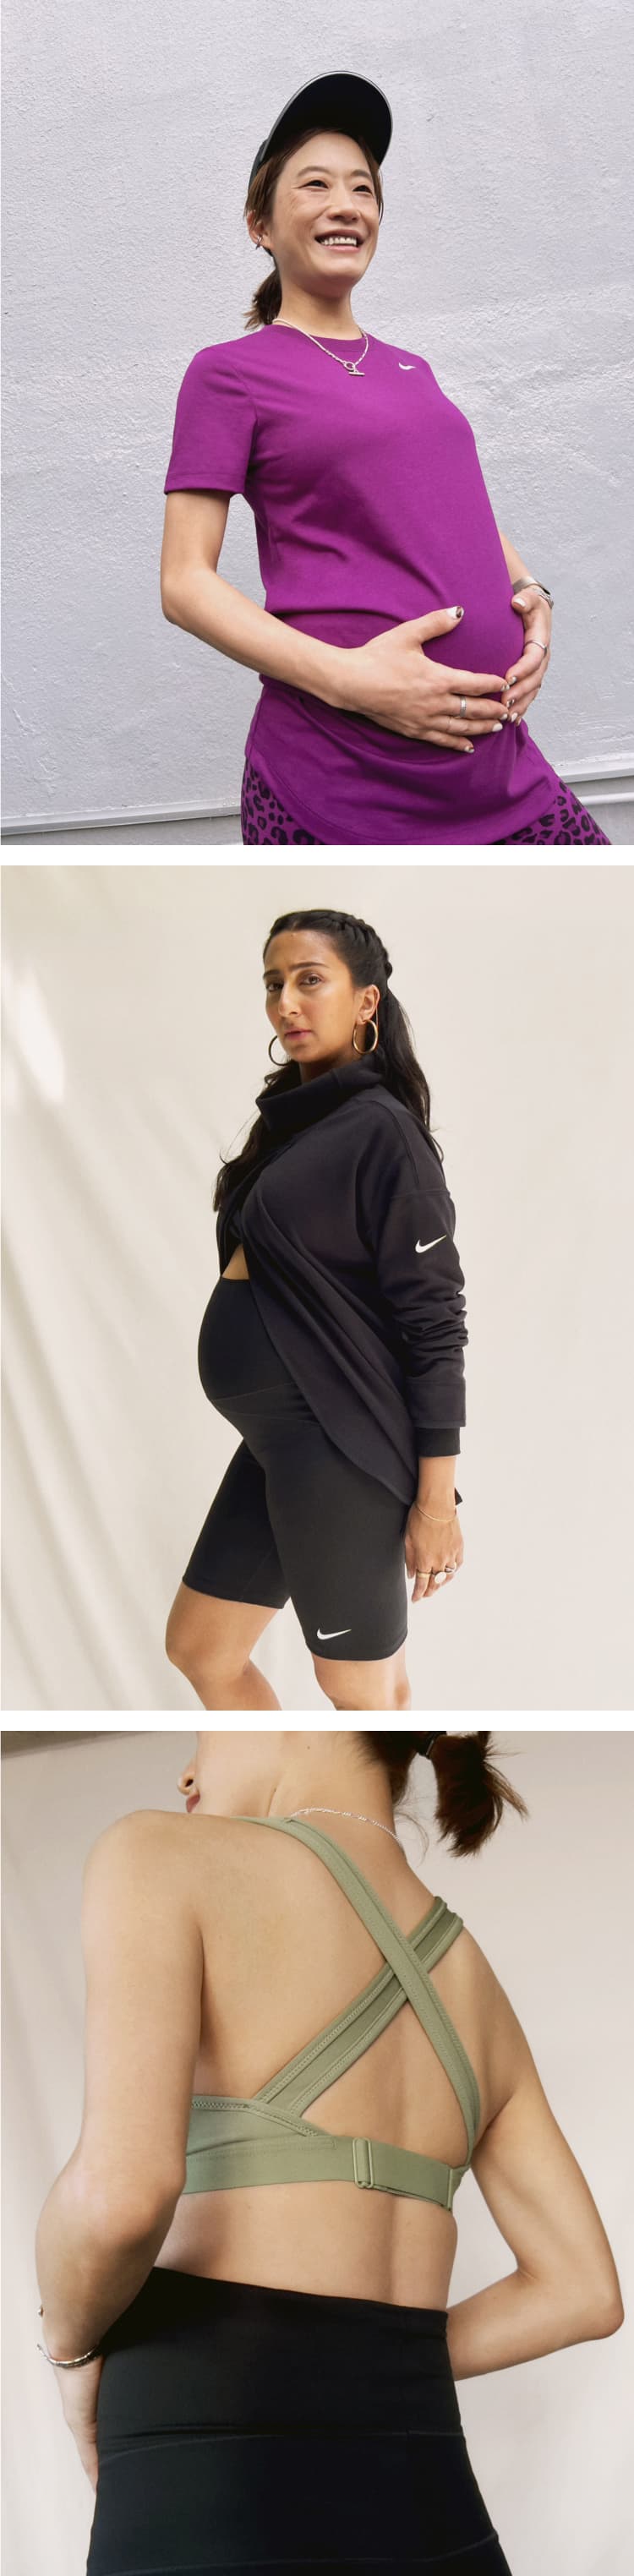 Quels vêtements de maternité faut-il pour s'entraîner ?. Nike FR